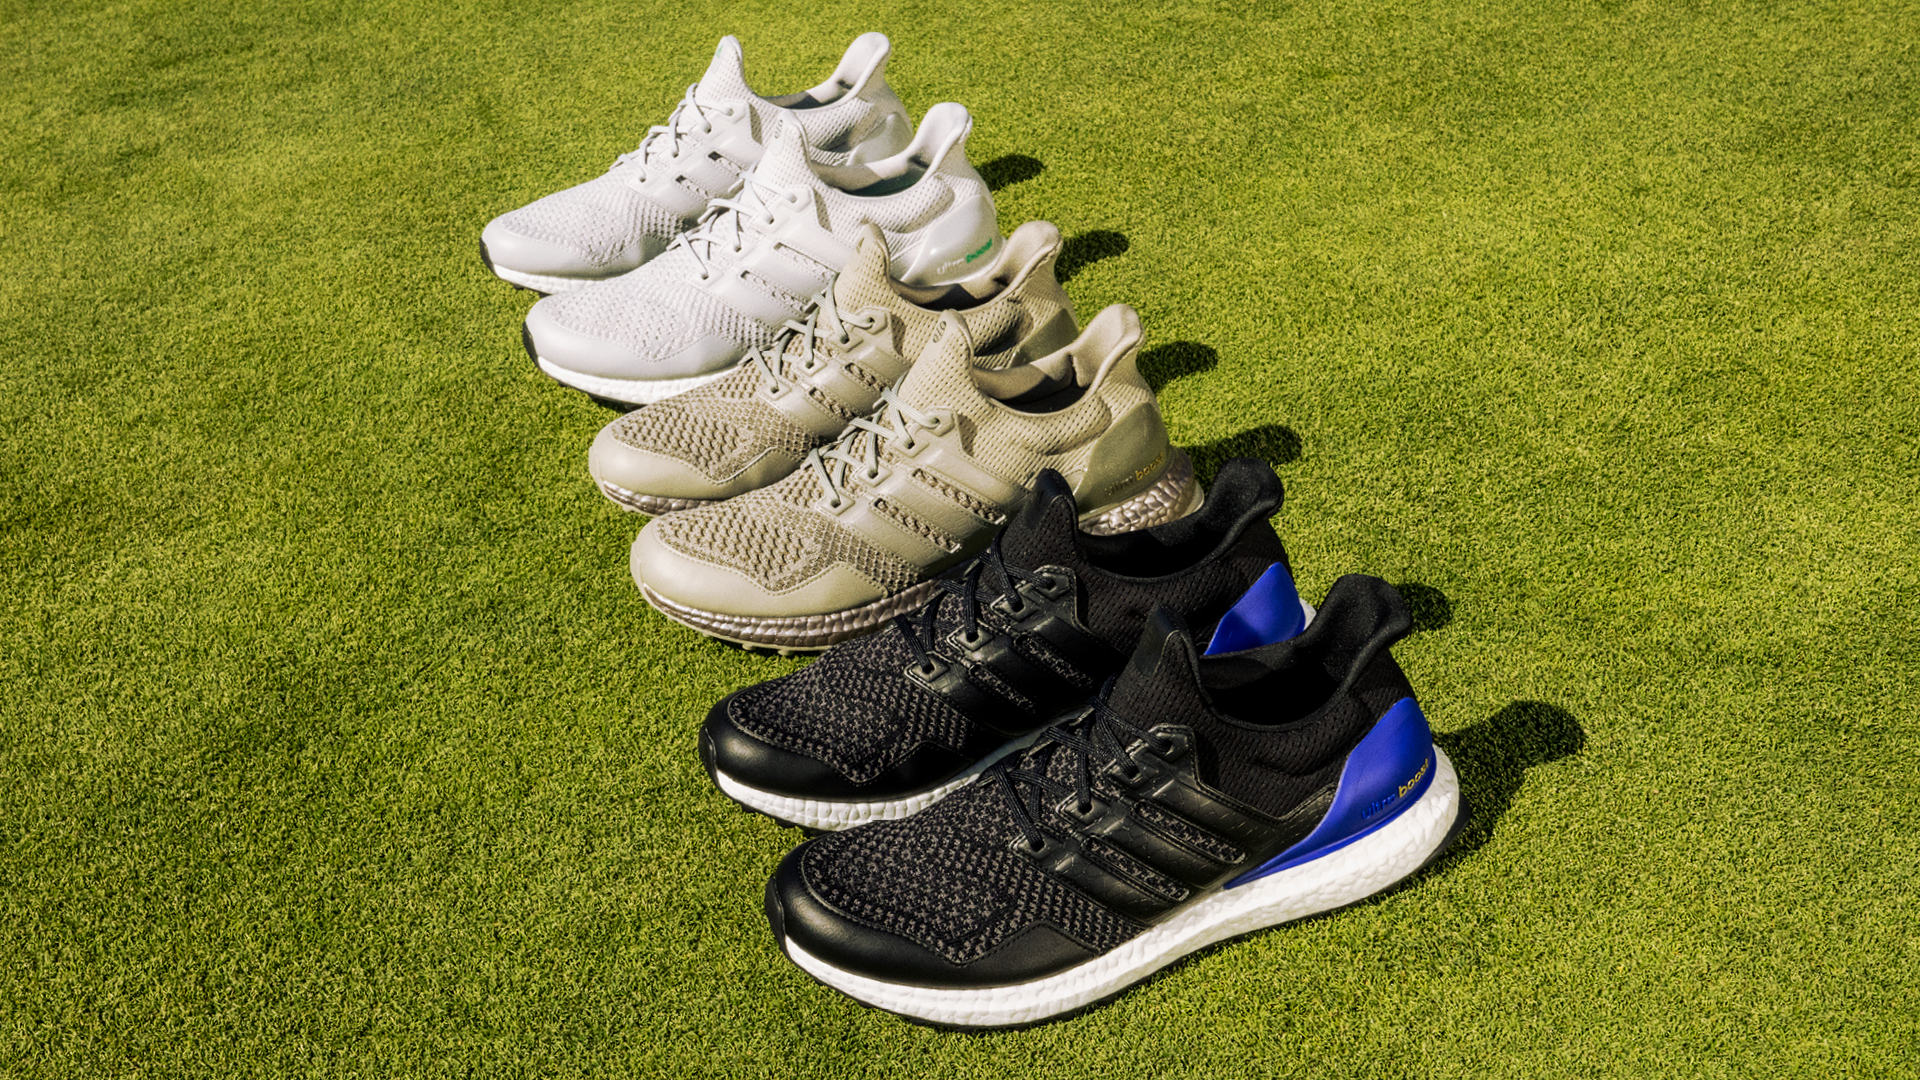 Adidas releases first Ultraboost Golf Shoe | Golf Equipment: Clubs, Balls,  Bags | Golf Digest